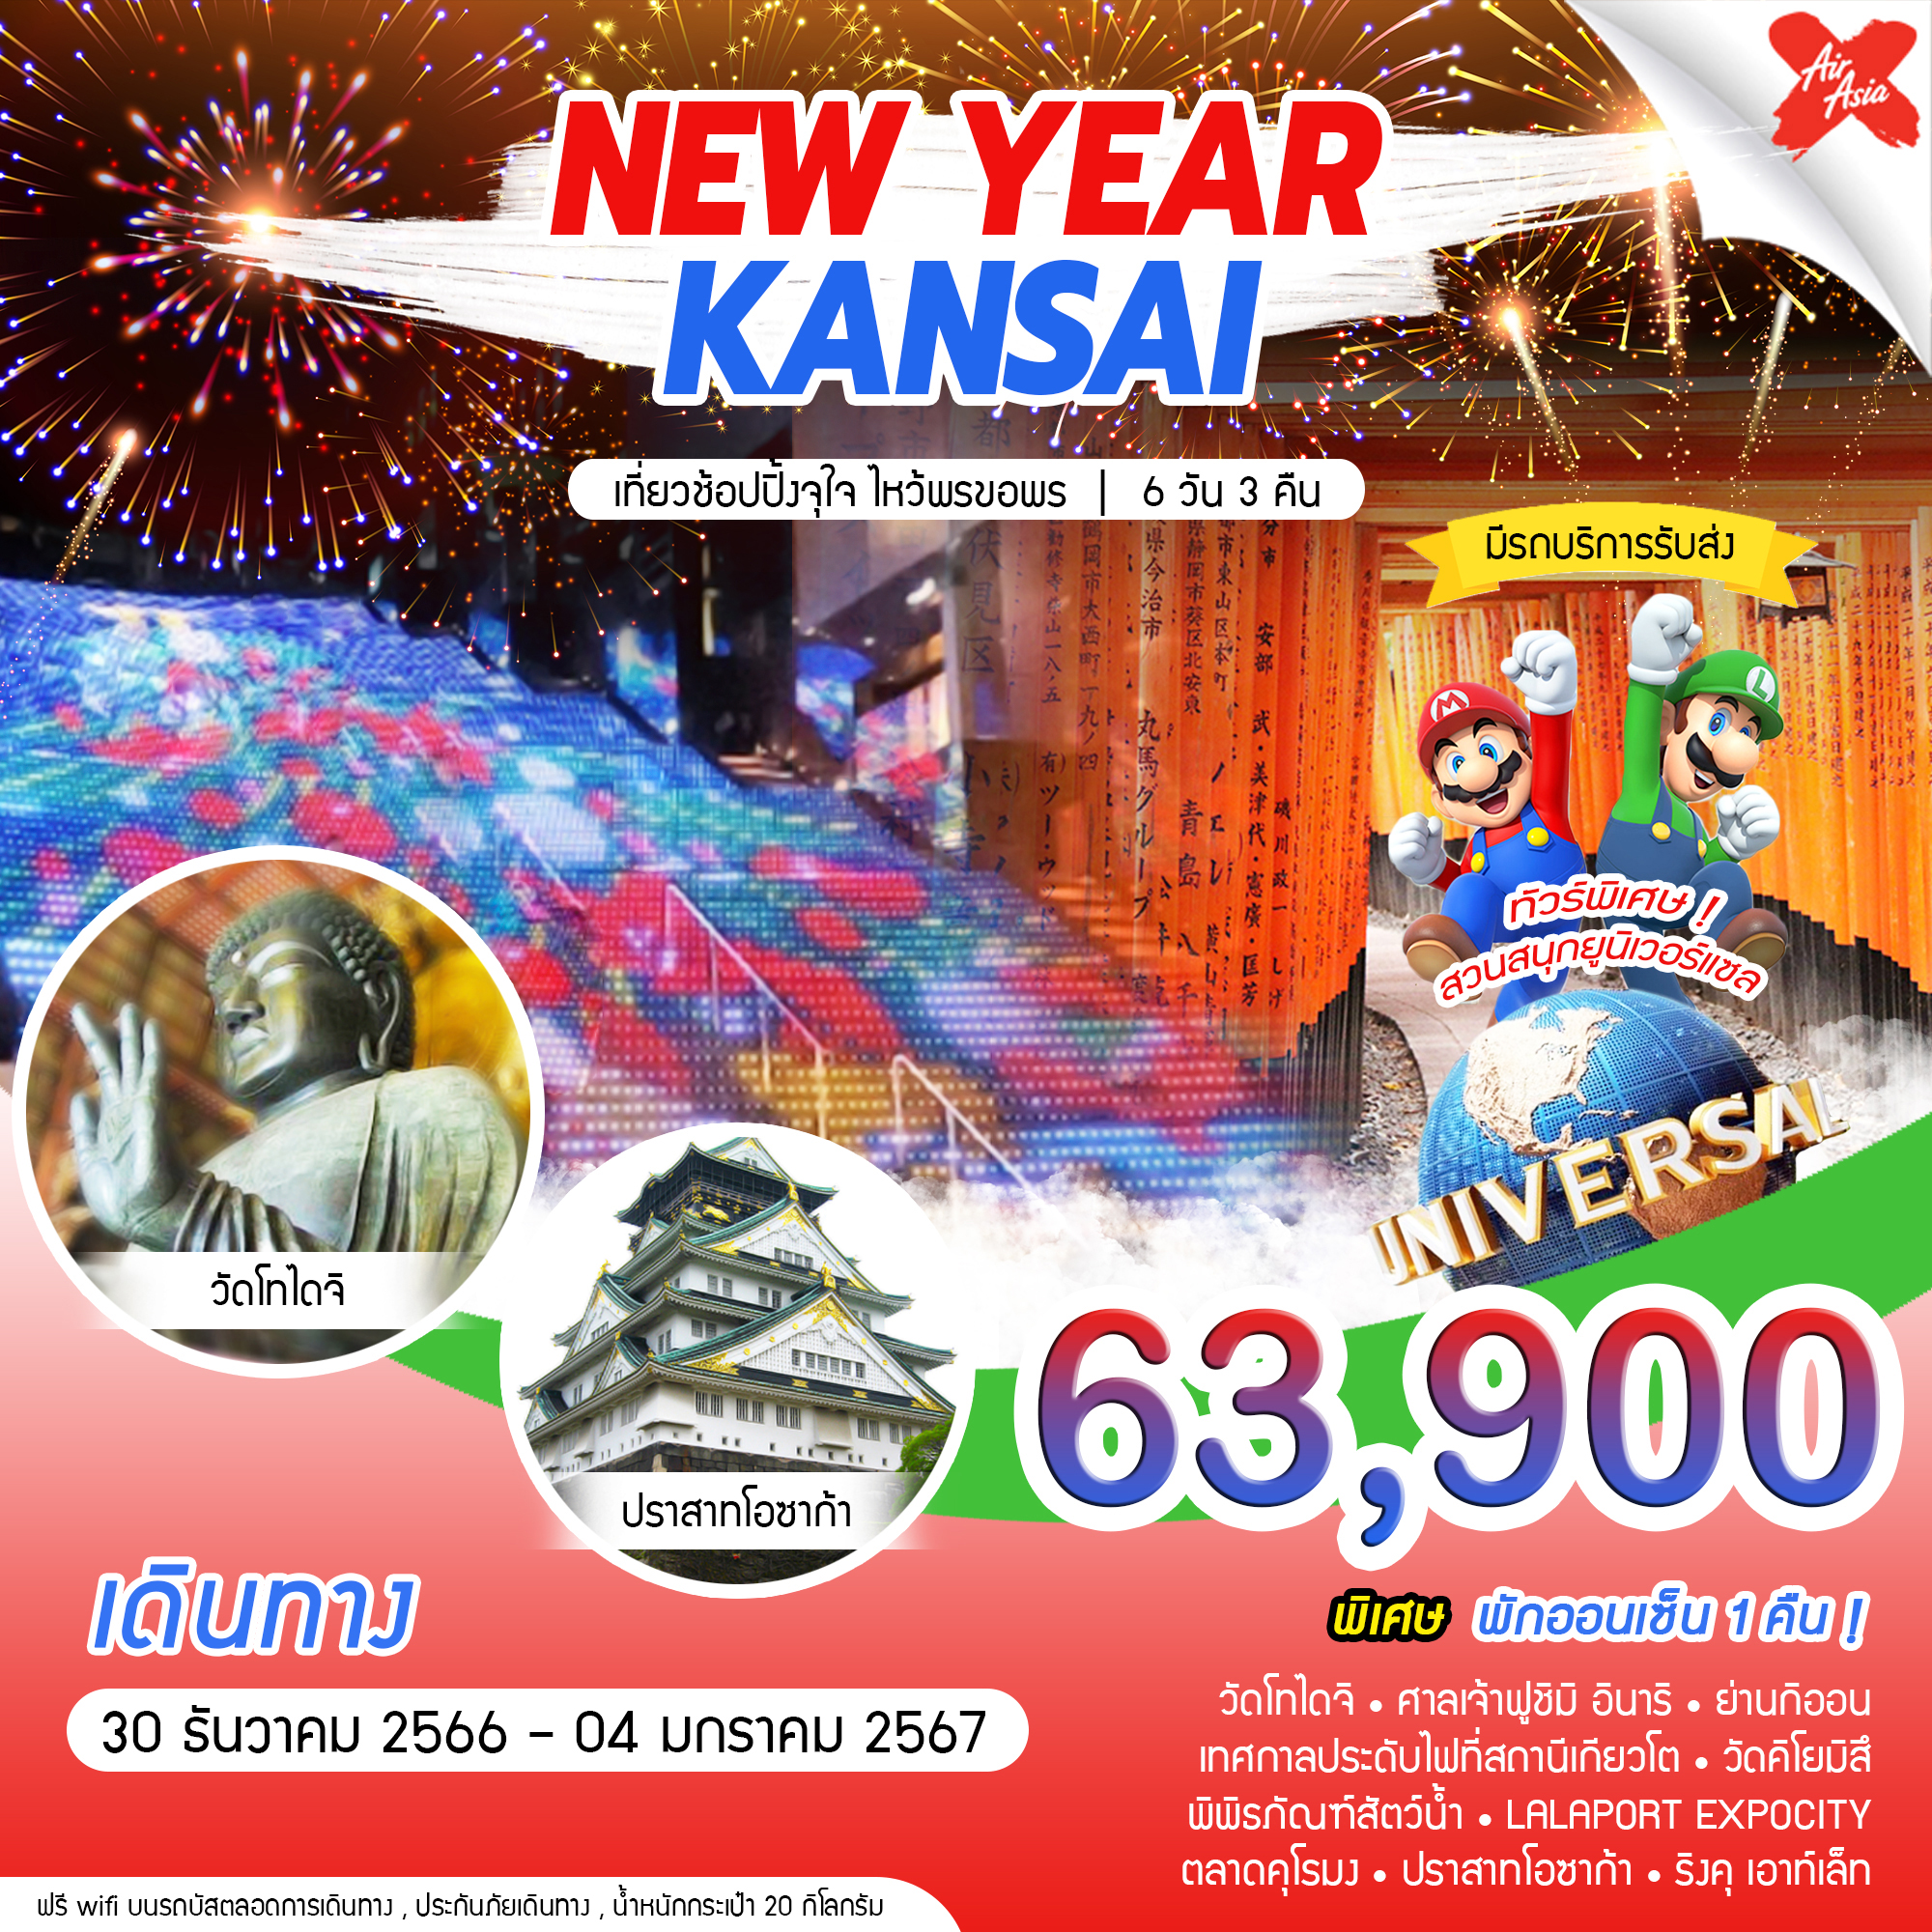 NEW-YEAR-KANSAI-(6D3N)